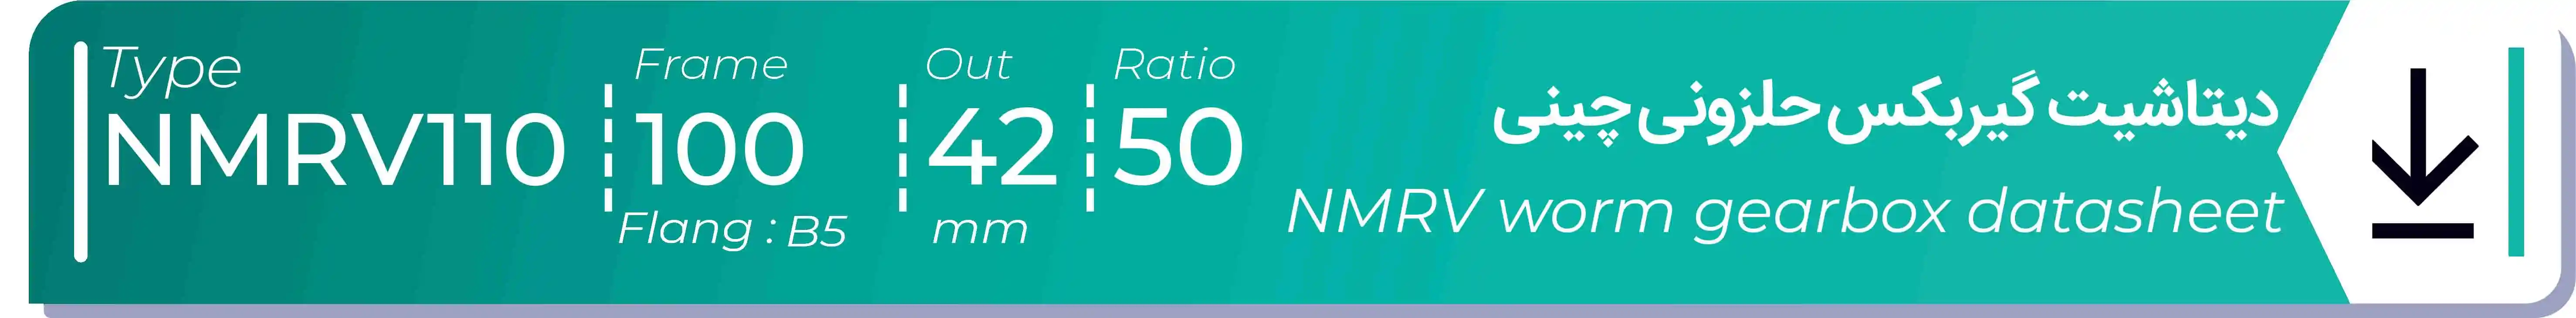  دیتاشیت و مشخصات فنی گیربکس حلزونی چینی   NMRV110  -  با خروجی 42- میلی متر و نسبت50 و فریم 100